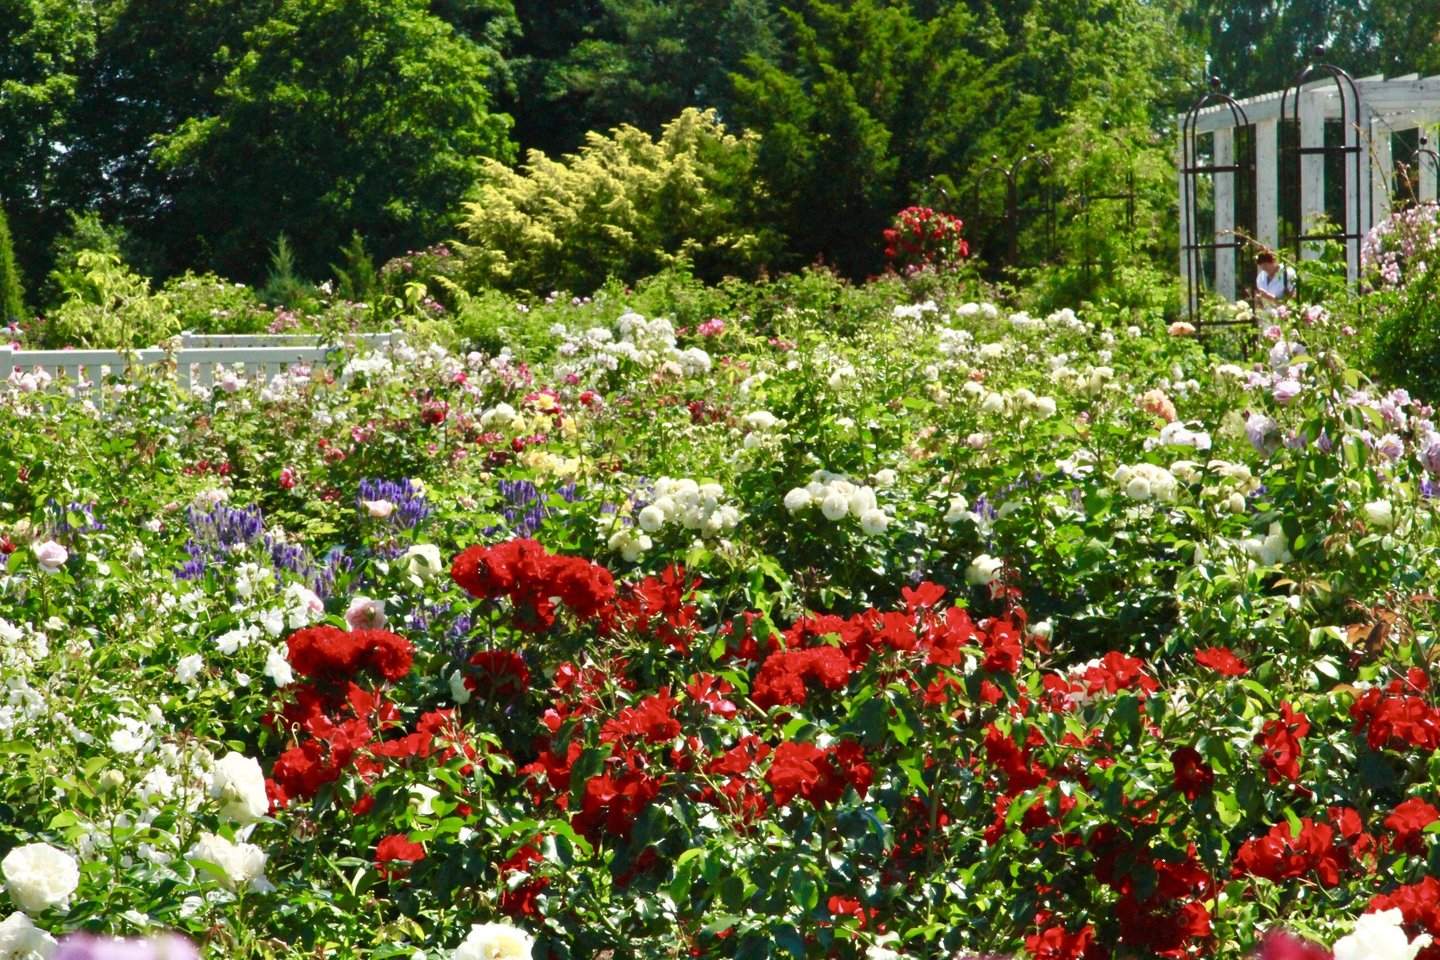 Vytauto Didžiojo universiteto Botanikos sode karščiai vienu metu pražydino tūkstančius rožių, iš viso daugiau kaip 1 700 krūmų.<br>VDU Botanikos sodo nuotr.